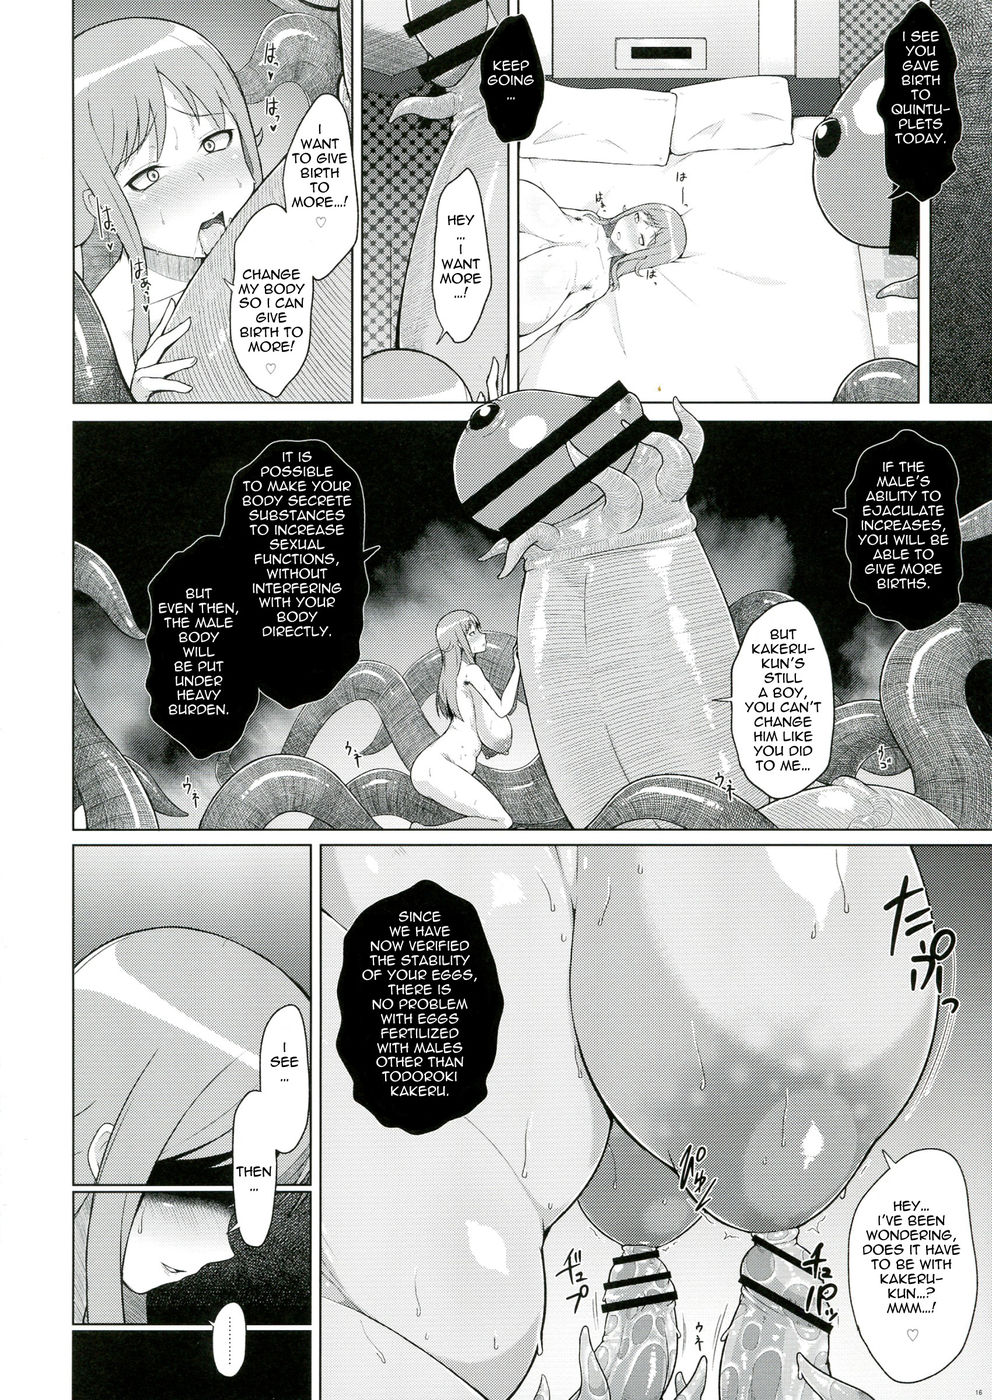 Hentai Manga Comic-Rui-sensei The Nursery-Read-18